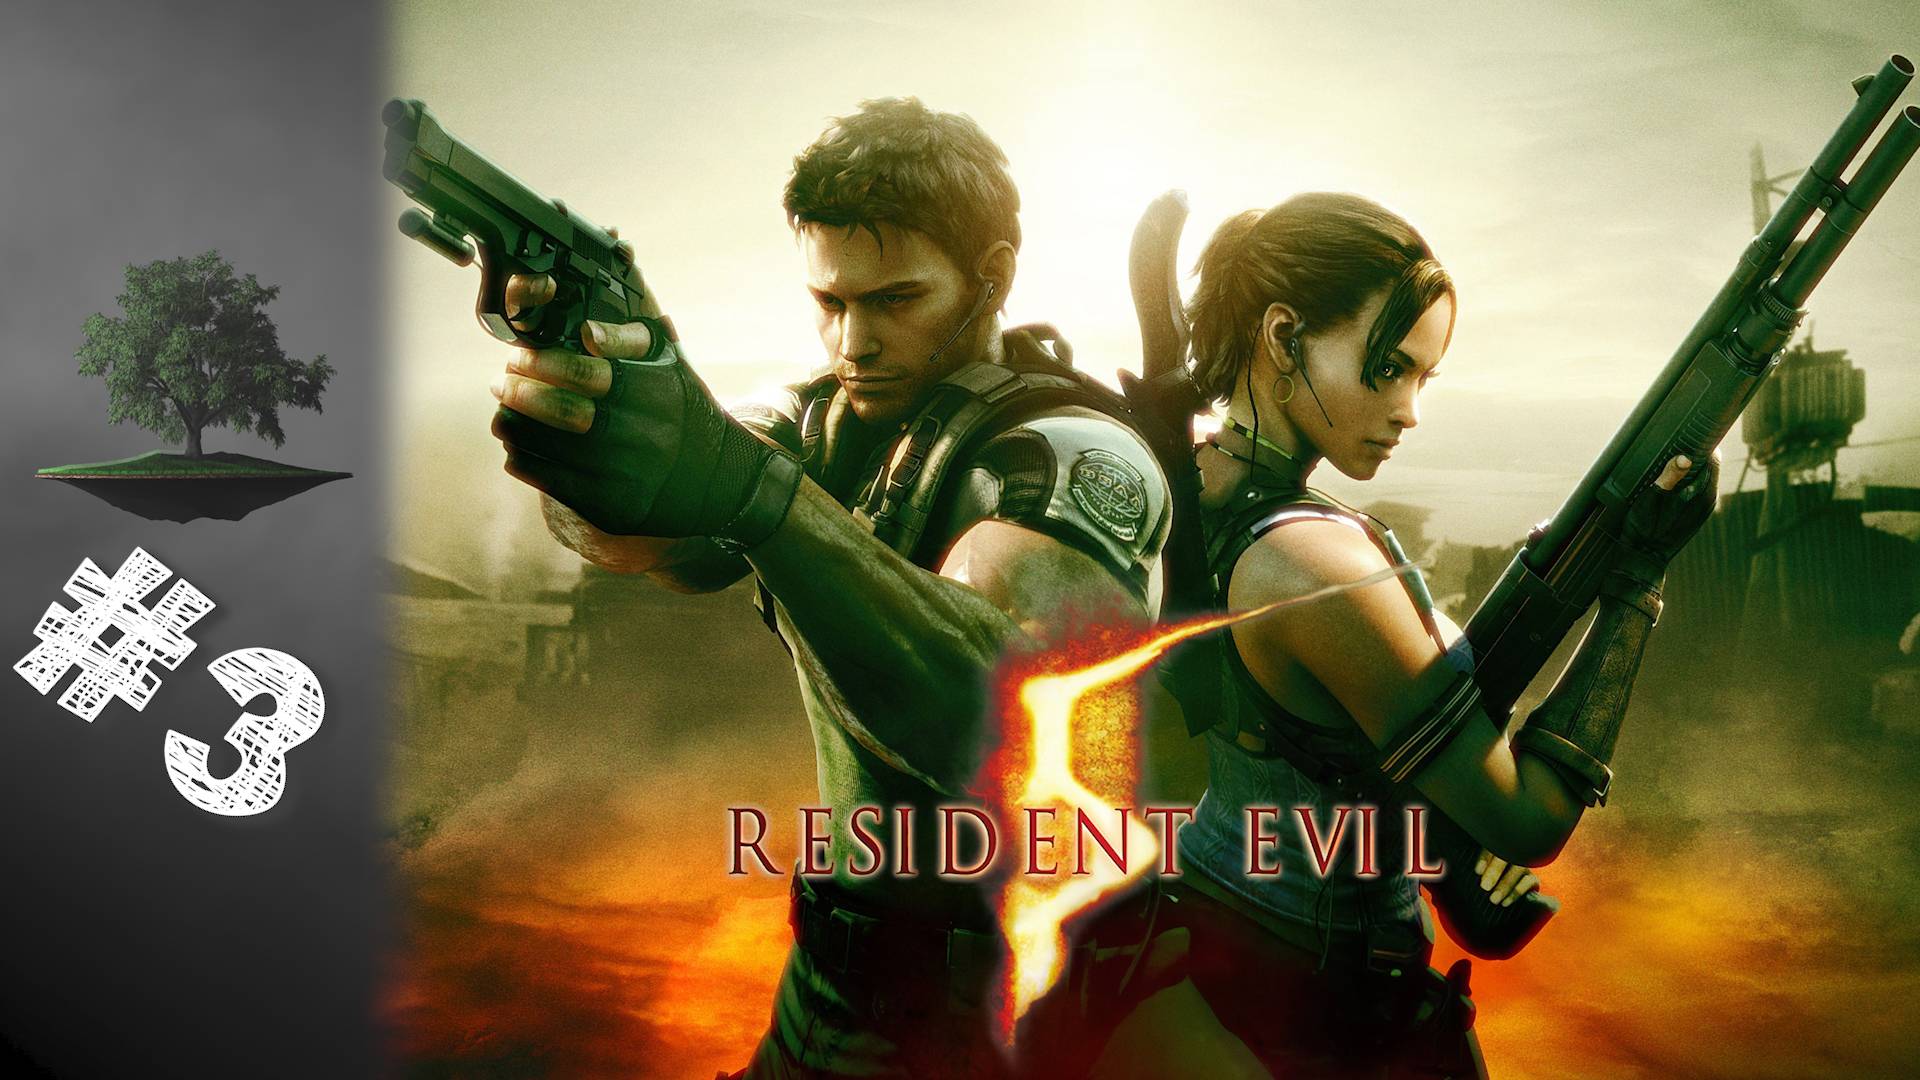 Resident Evil 5 ♦ КООПЕРАТИВ №3 - Попокариму и Ндесу.